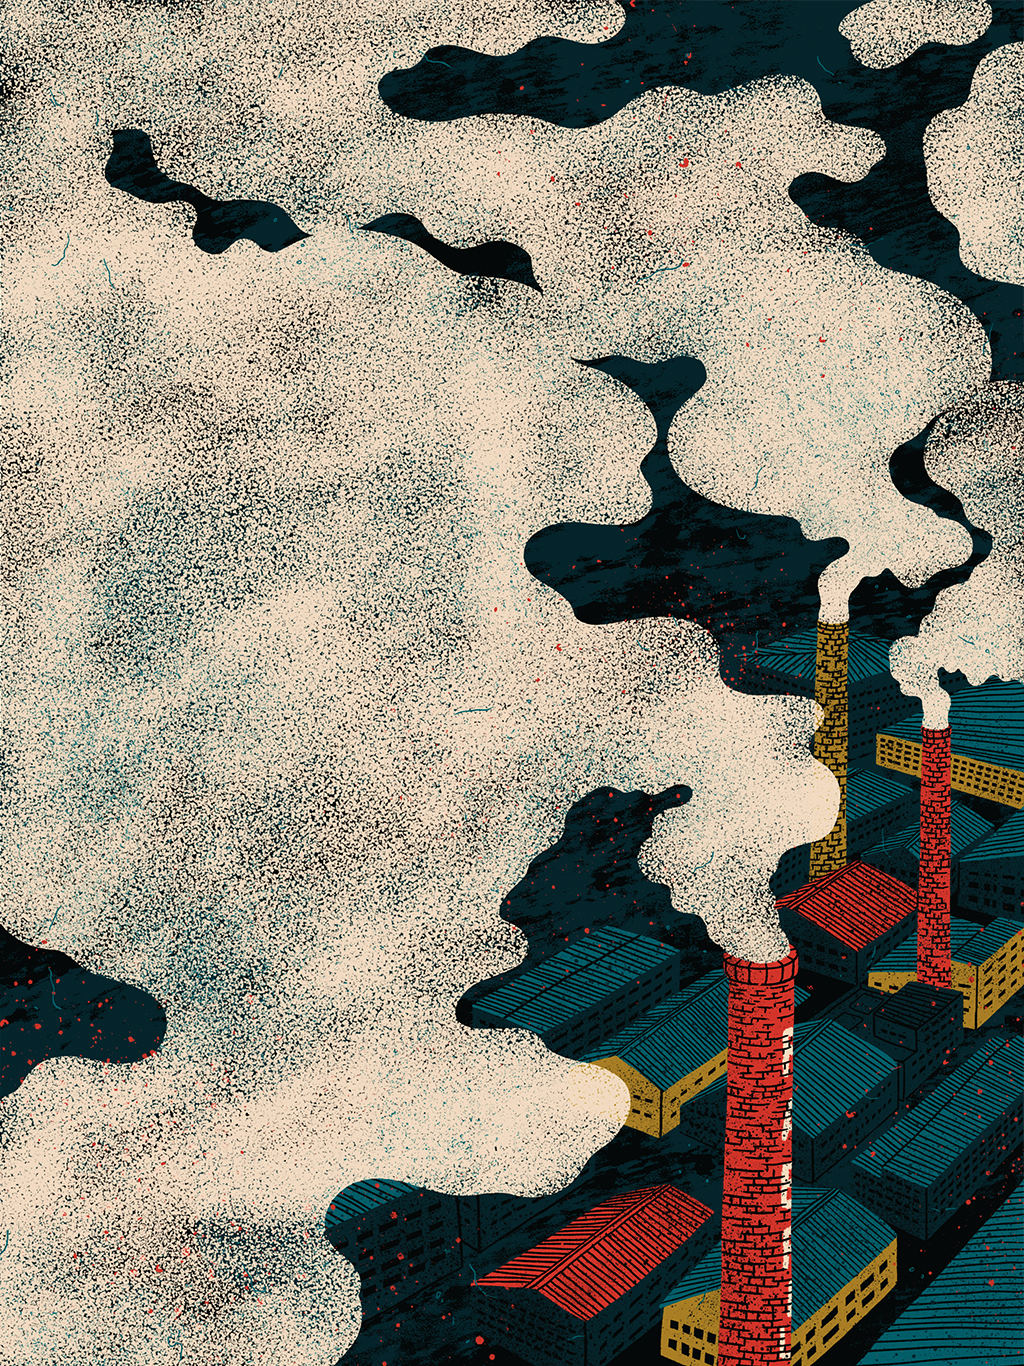 Ilustração com fumaça em primeiro plano saindo de chaminés de fábricas ao fundo.